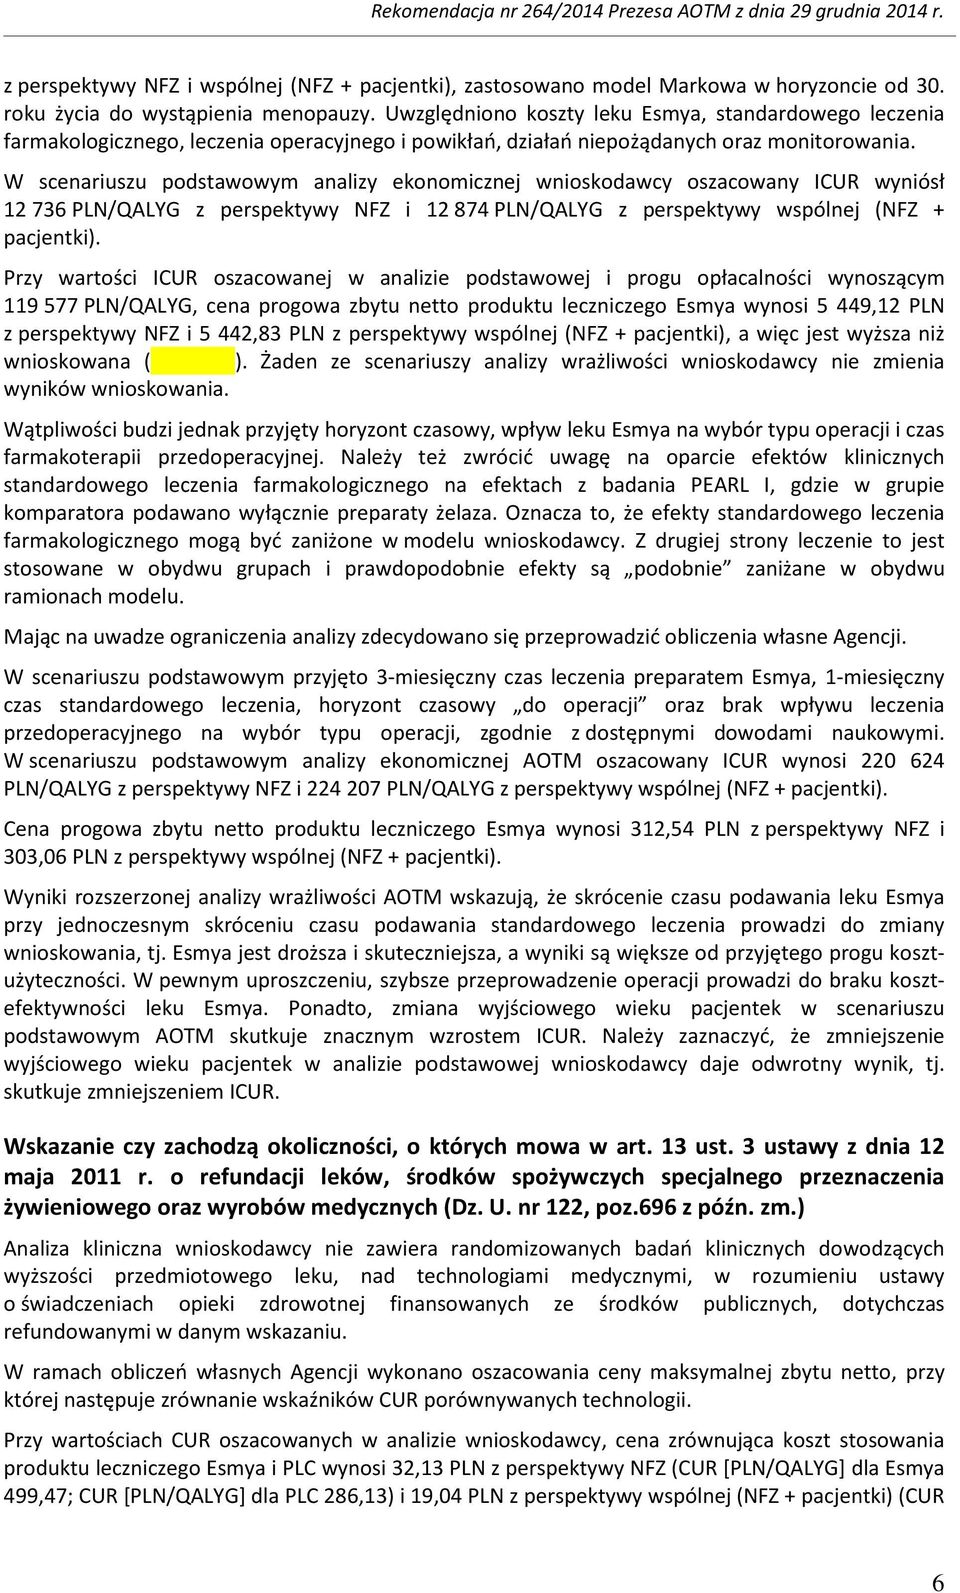 W scenariuszu podstawowym analizy ekonomicznej wnioskodawcy oszacowany ICUR wyniósł 12 736 PLN/QALYG z perspektywy NFZ i 12 874 PLN/QALYG z perspektywy wspólnej (NFZ + pacjentki).